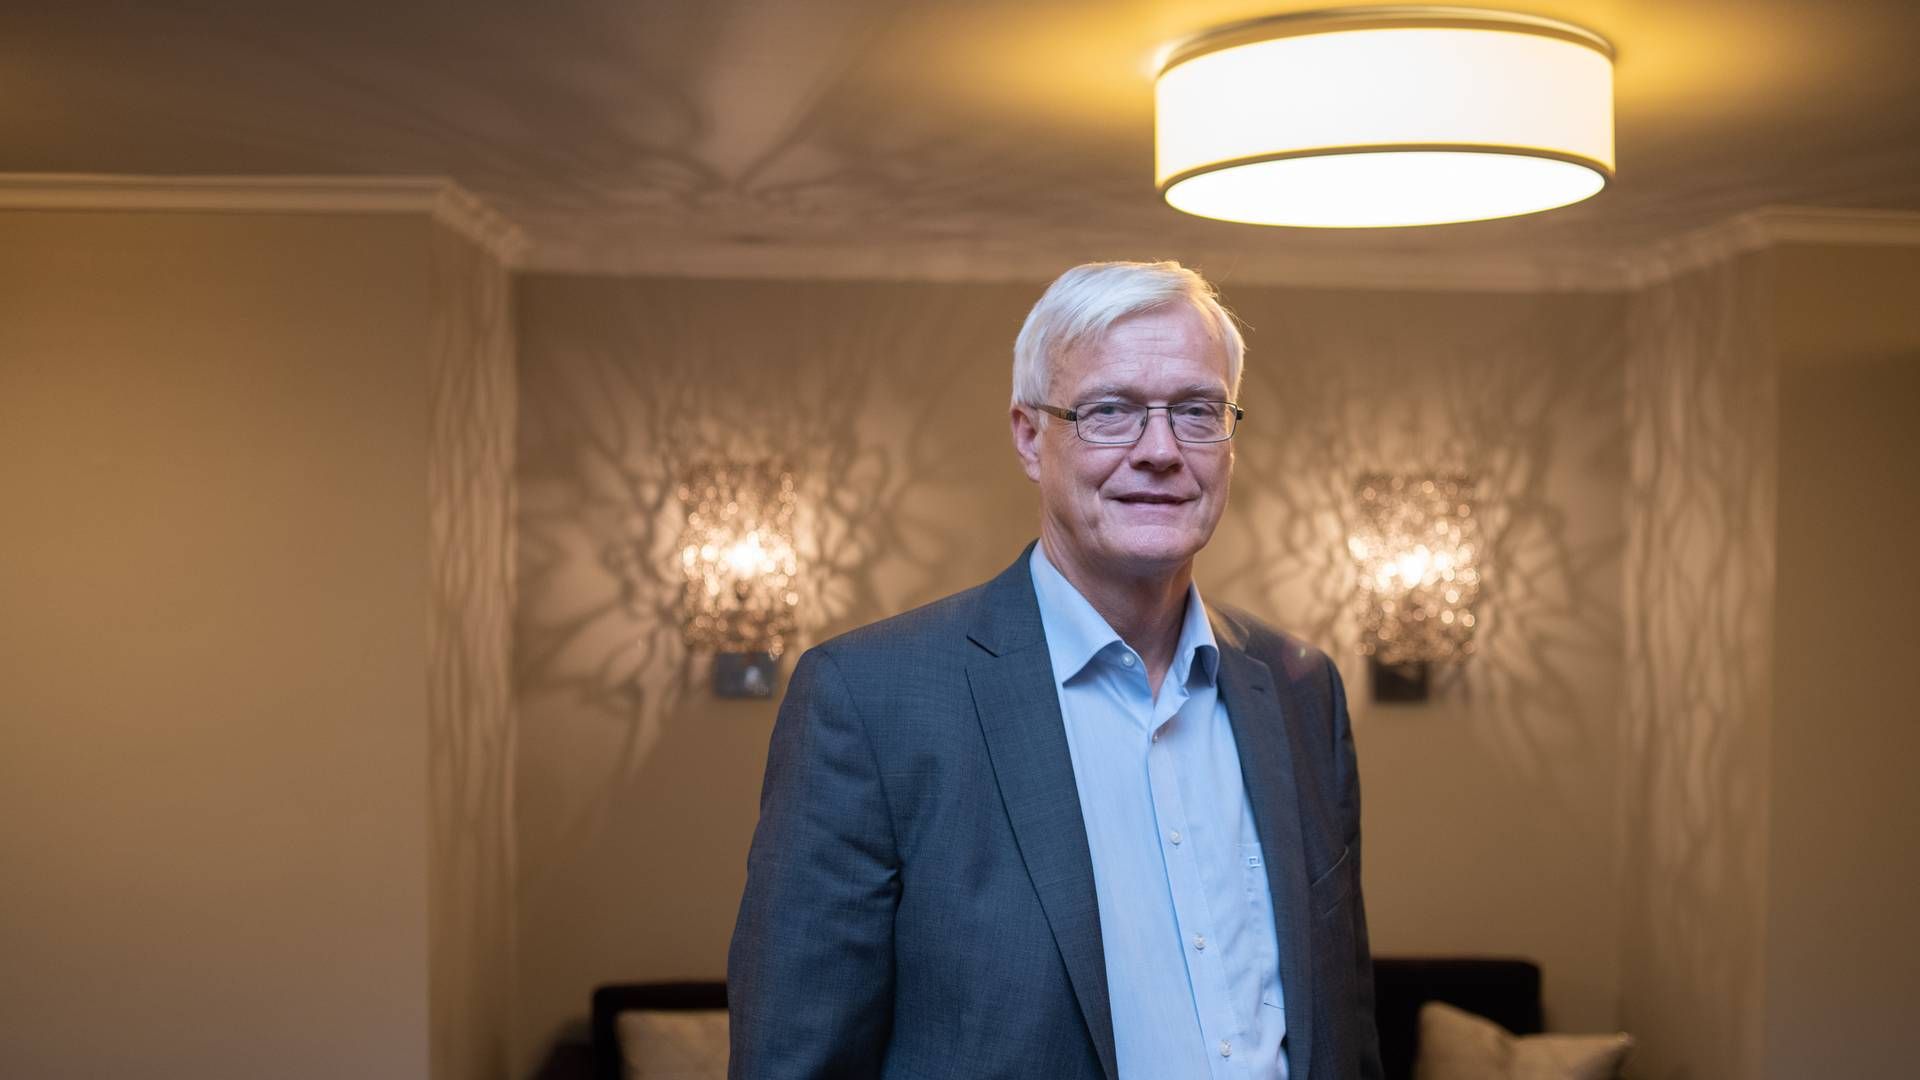 GOD UKE: Lytix Biopharma-direktør Øystein Rekdal kan konstatere positive nyheter for selskapet denne uken. | Foto: Vidar Sandnes